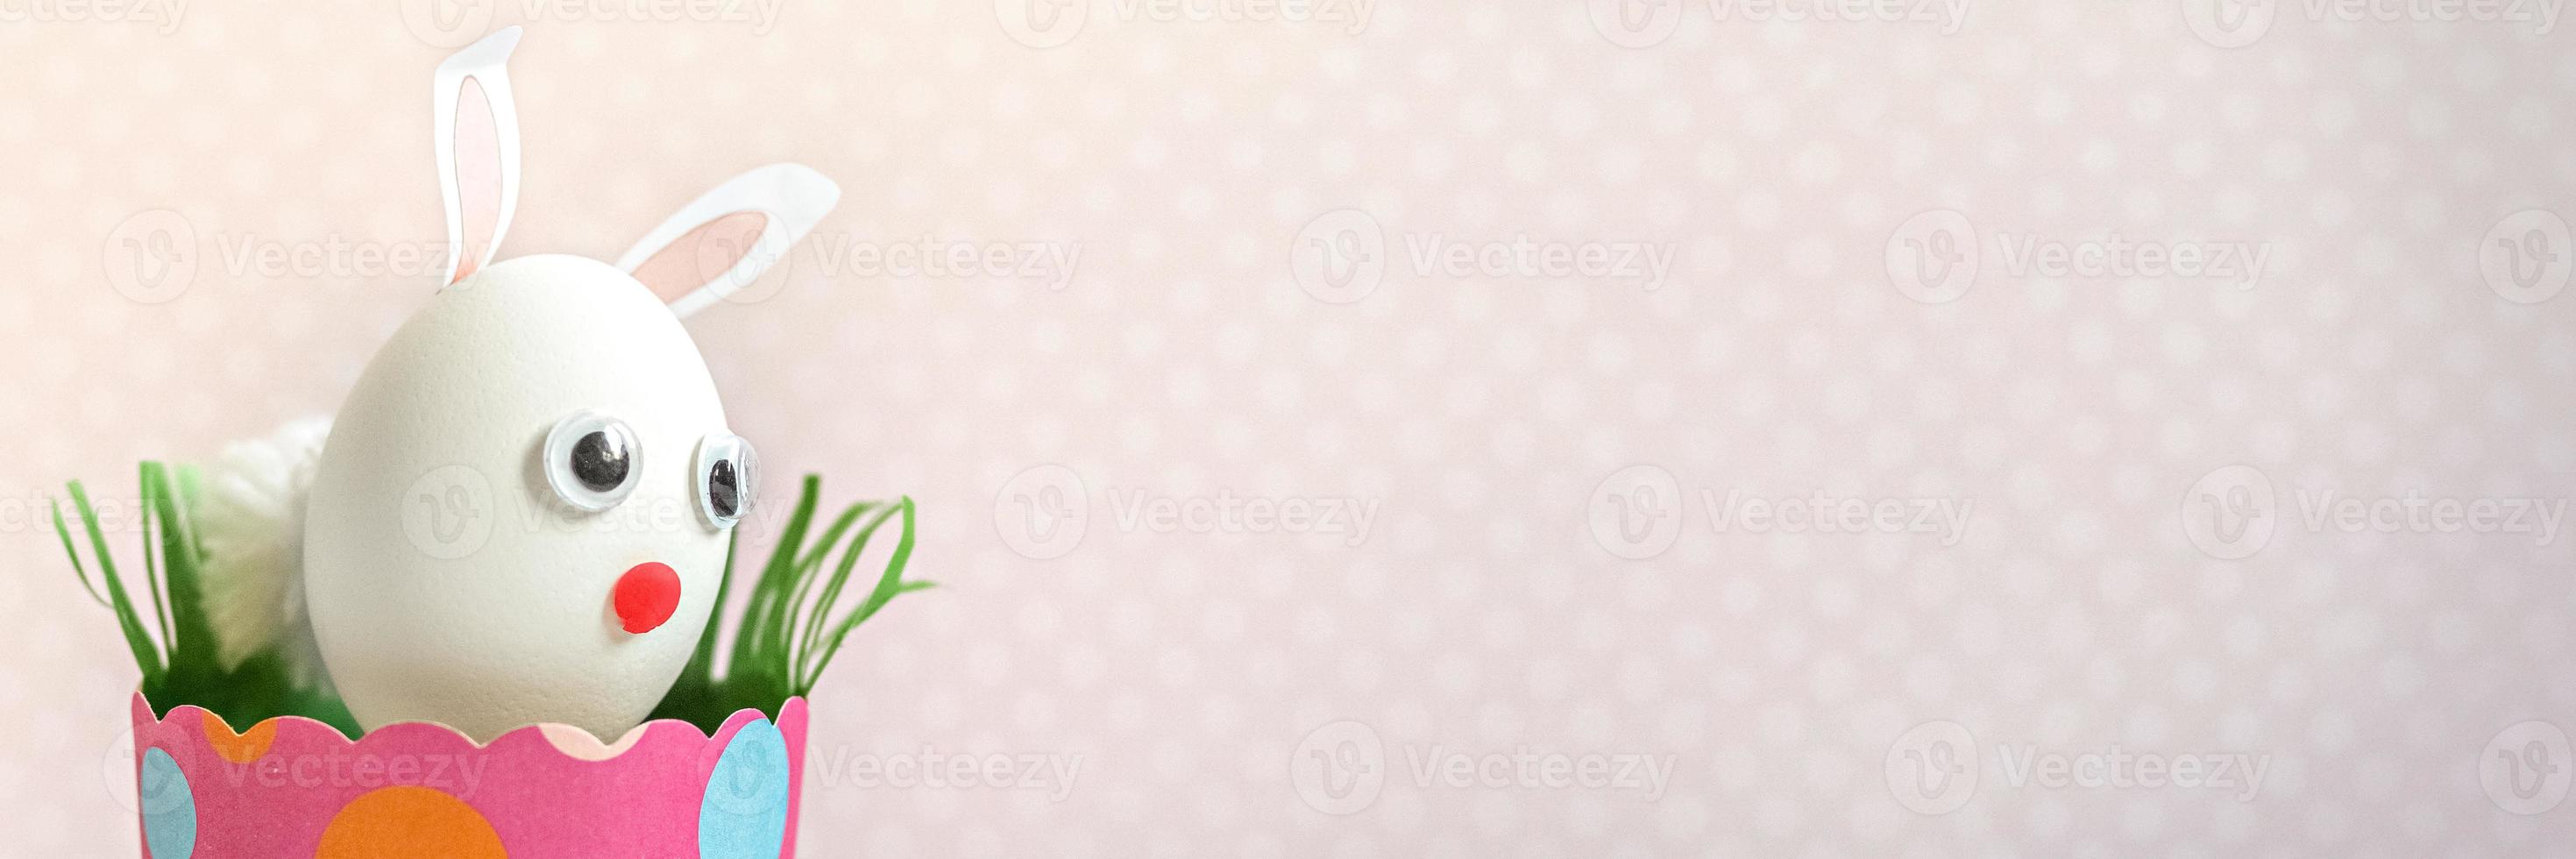 vitt kycklingägg med kaninöron och en munkorg i ett miljövänligt rosa pappersfack, låda. glad påskhelg koncept. banner foto